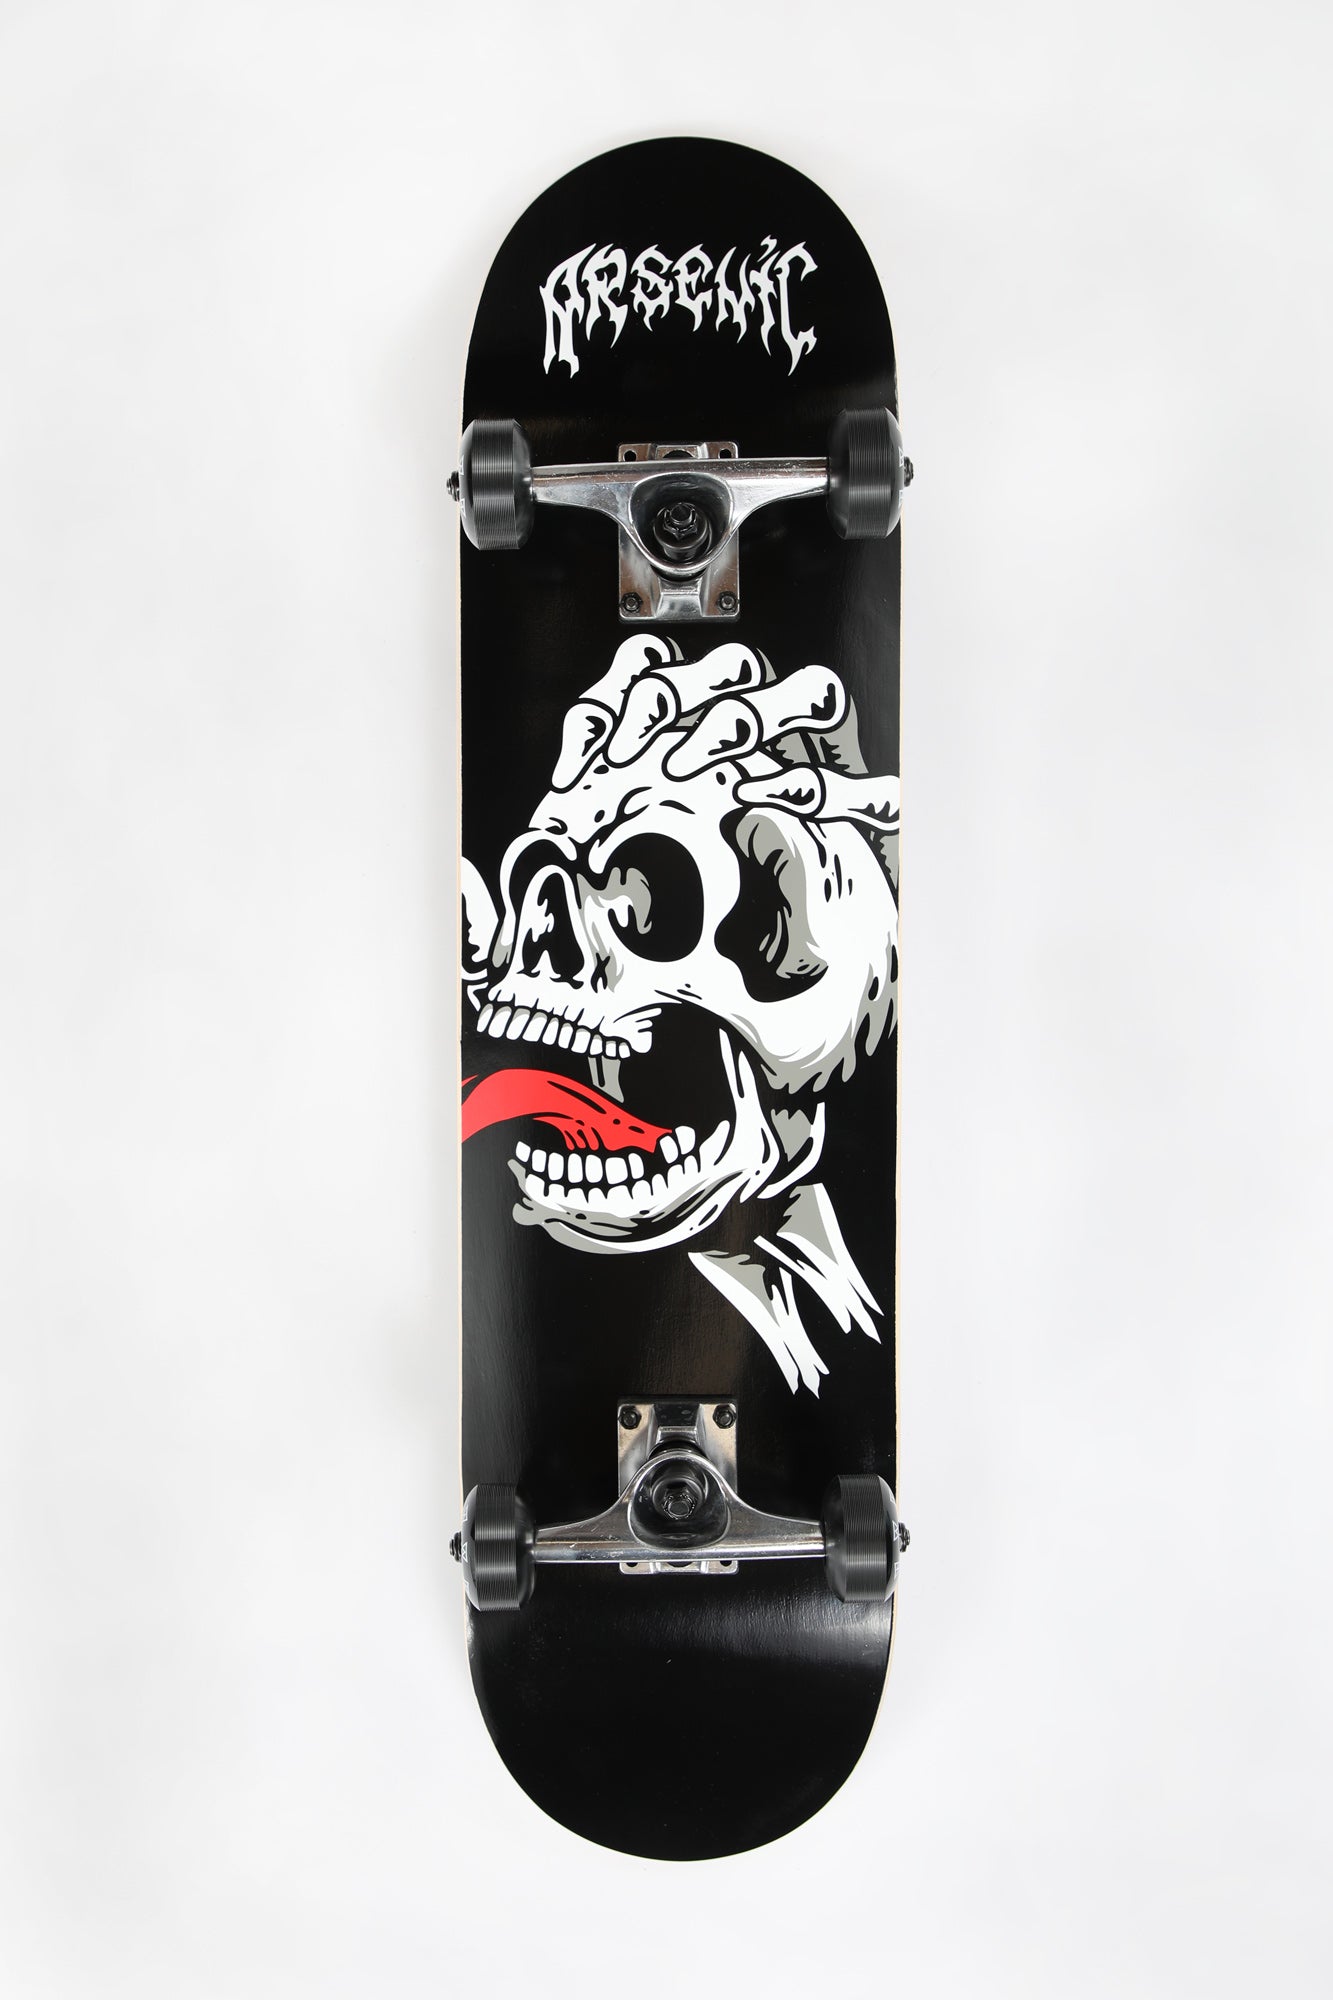 Arsenic Skull Hand Skateboard 7.75" - Black with White / 7.75